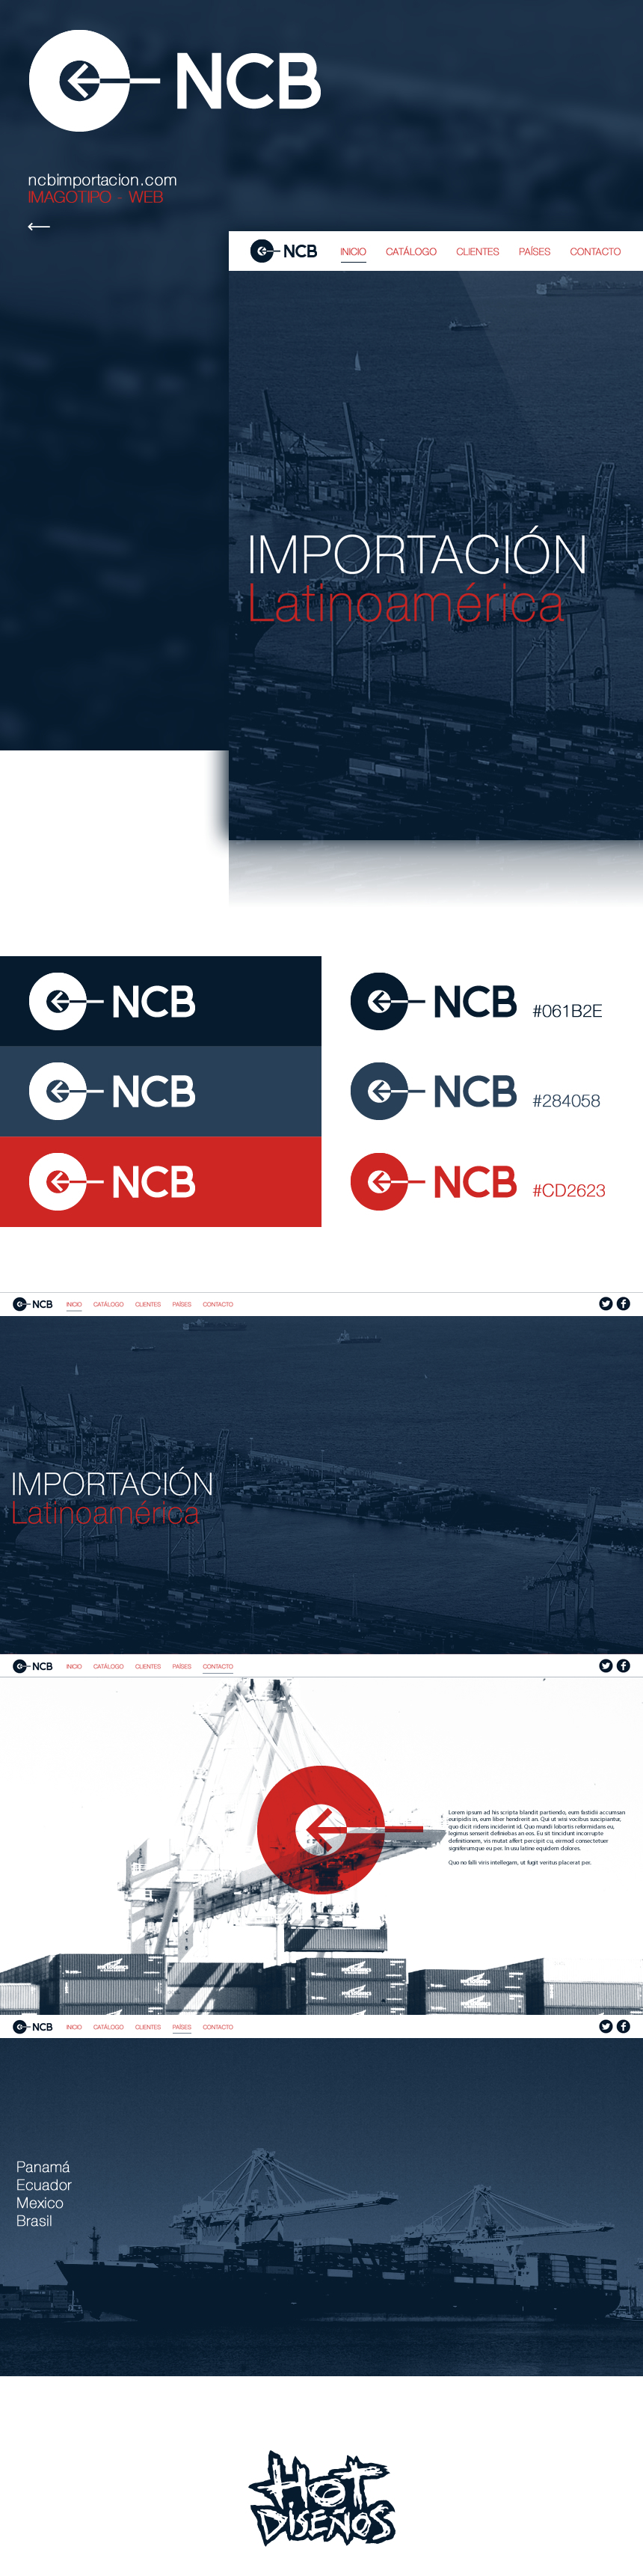 elhot NCB hotdesigns Import importación hotdiseños logo blue red importation Hot modern port Transport latinoamerica